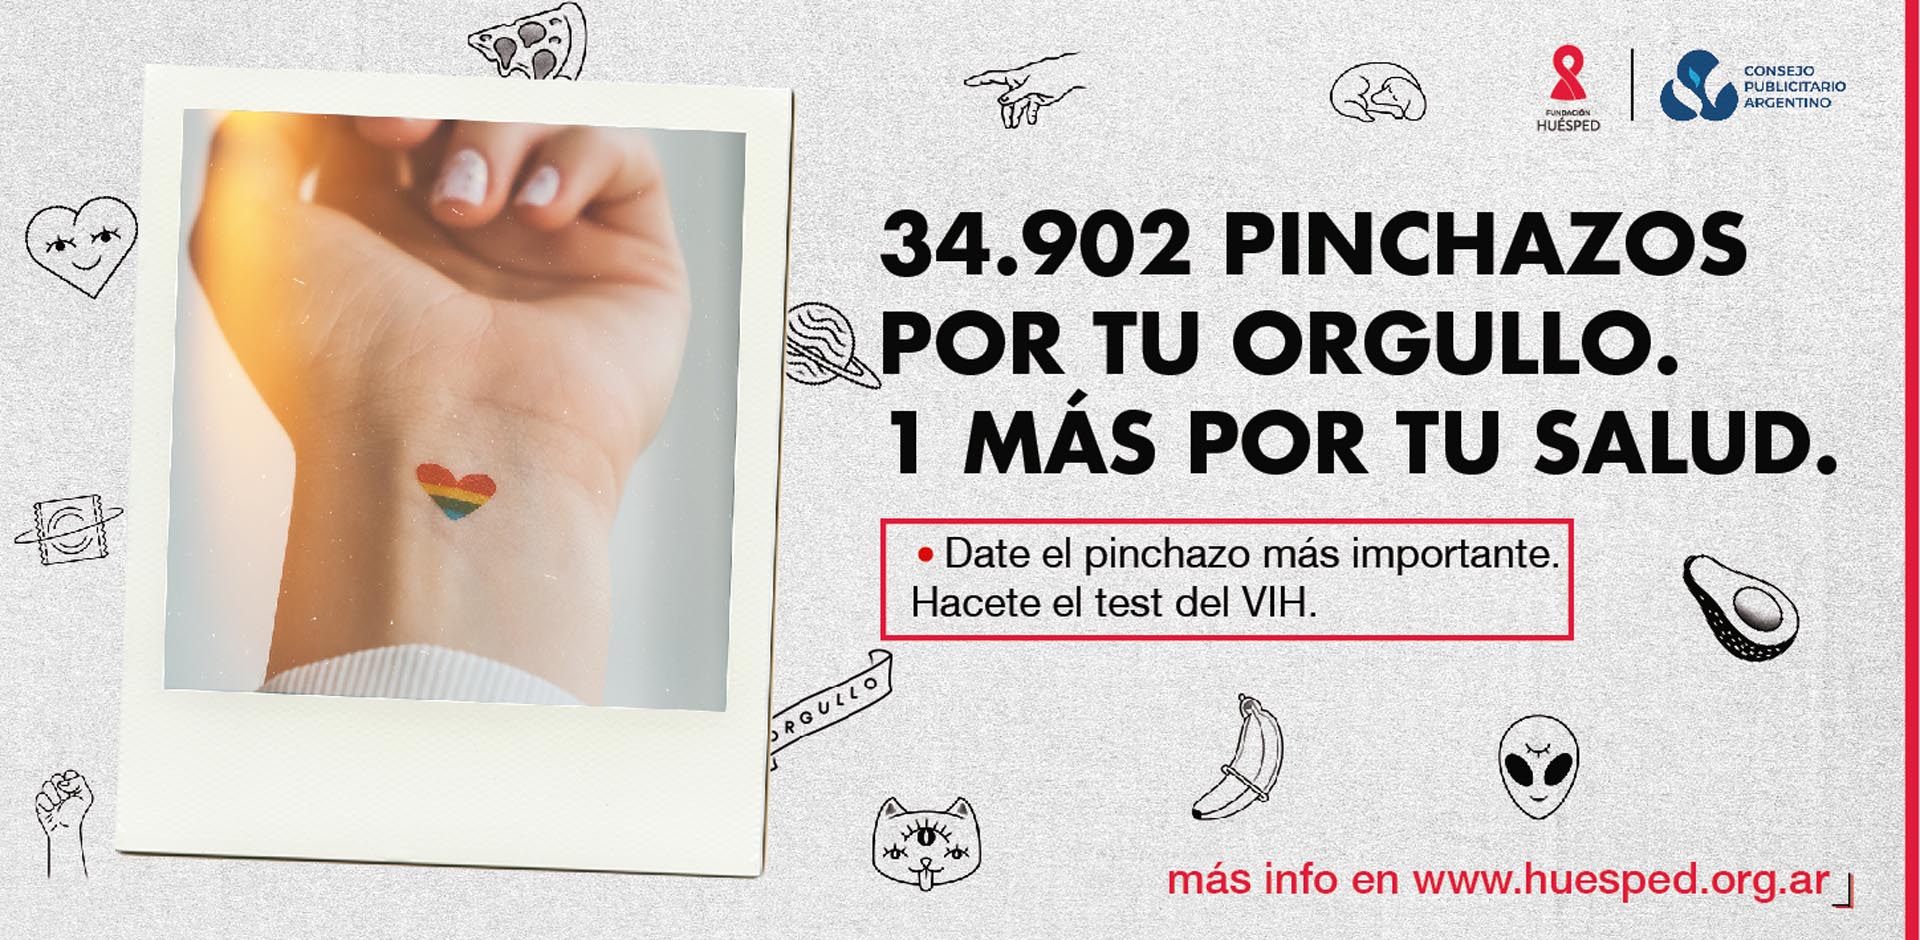 La campaña es impulsada por la Fundación Huésped, una organización argentina con alcance regional que desde 1989 trabaja en áreas de salud pública